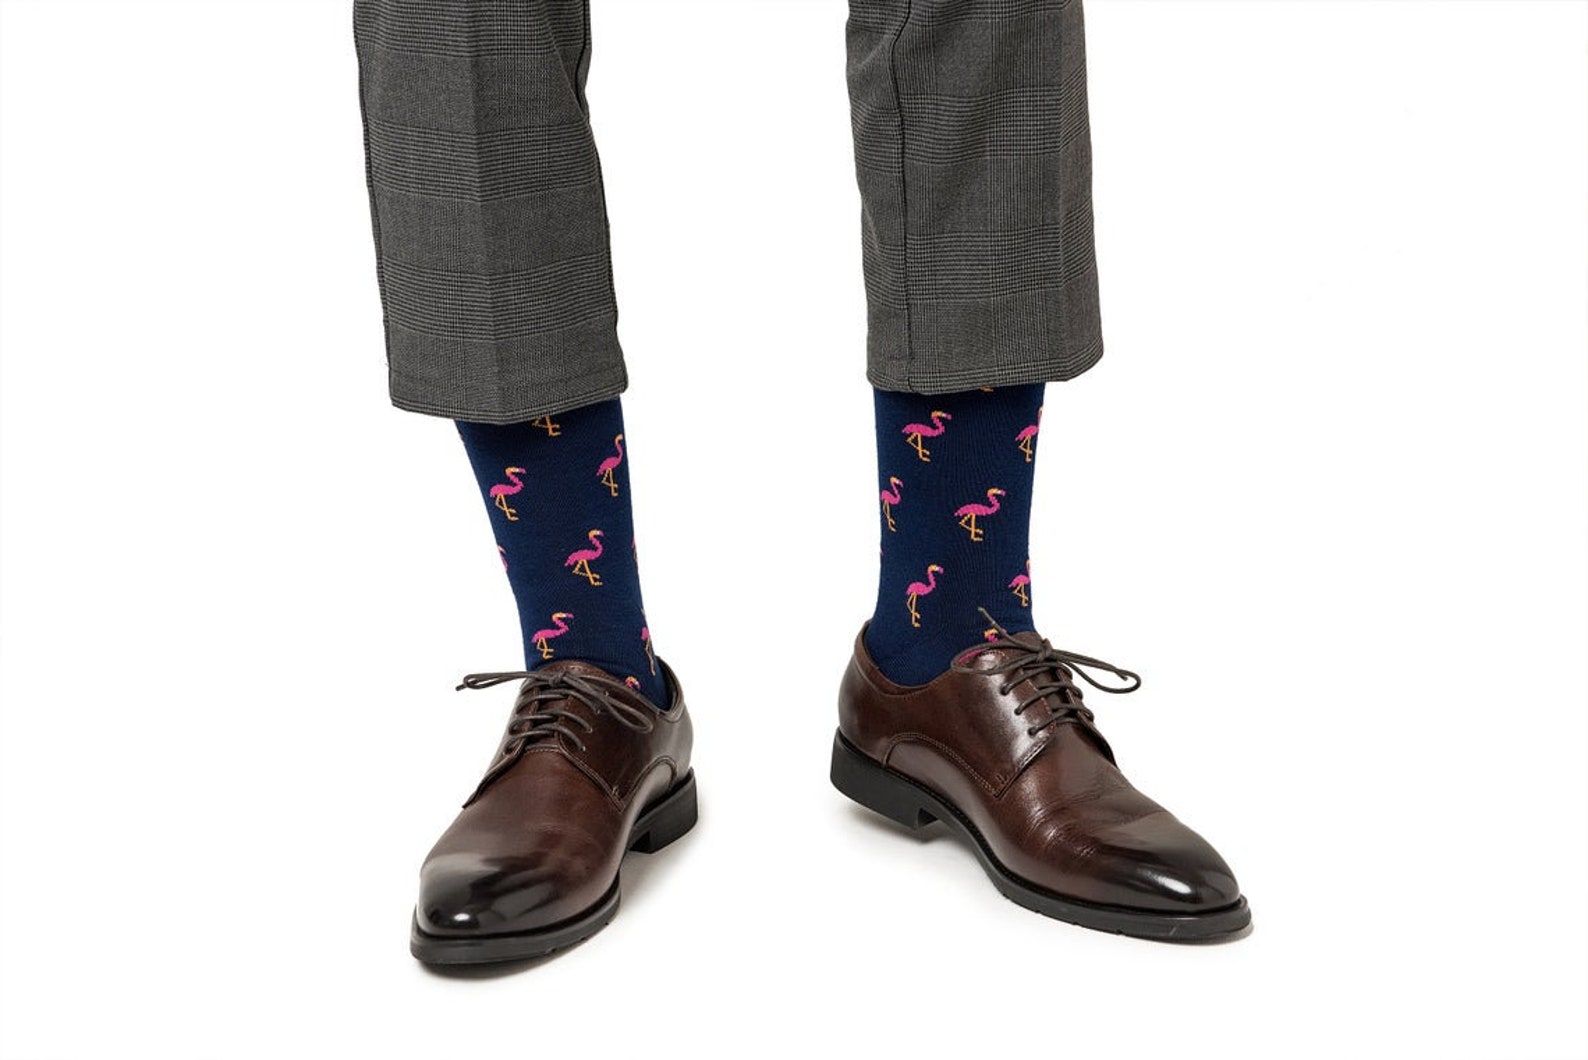 Flamingo Socks & Tie Combo Gift for Men Animal Lover | Etsy